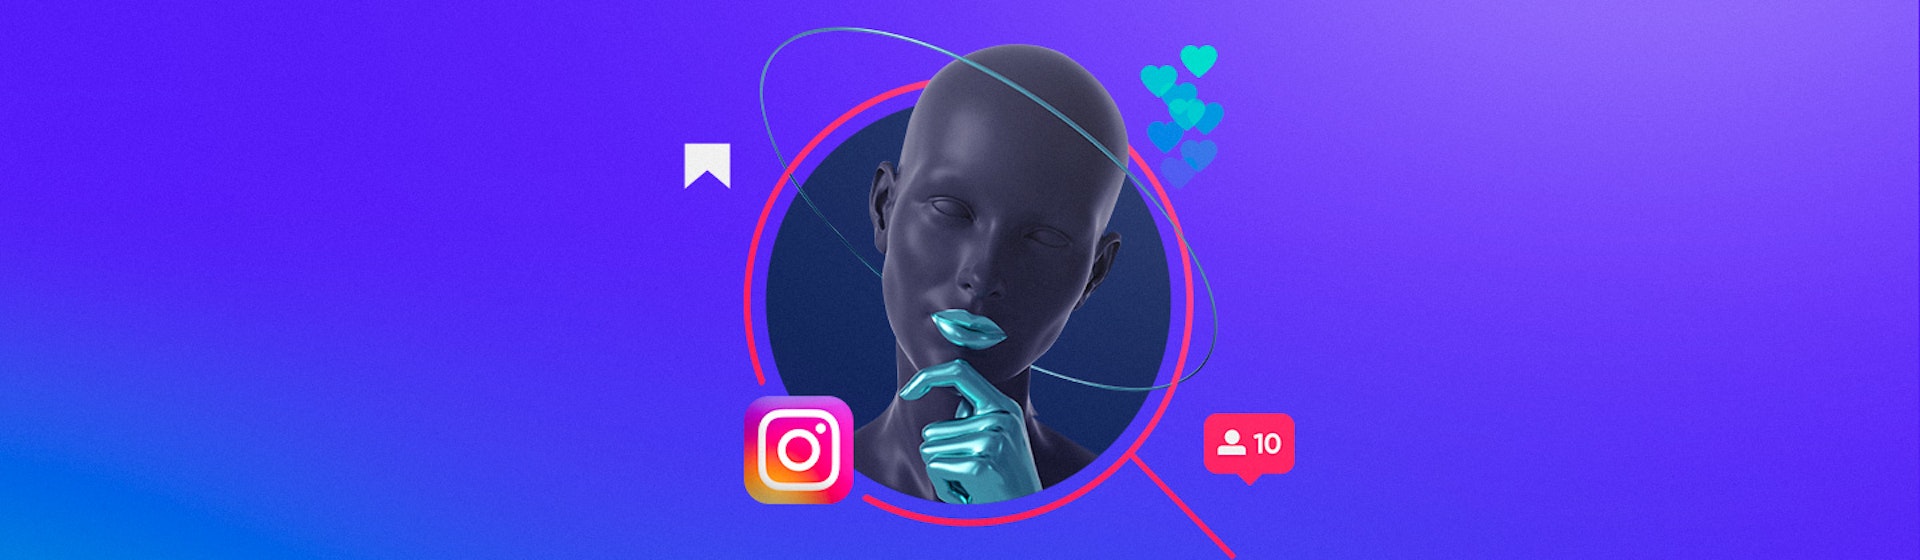 ¿Cómo aparecer en la lupa de Instagram? ¡Destaca tu contenido con Instagram Explore!